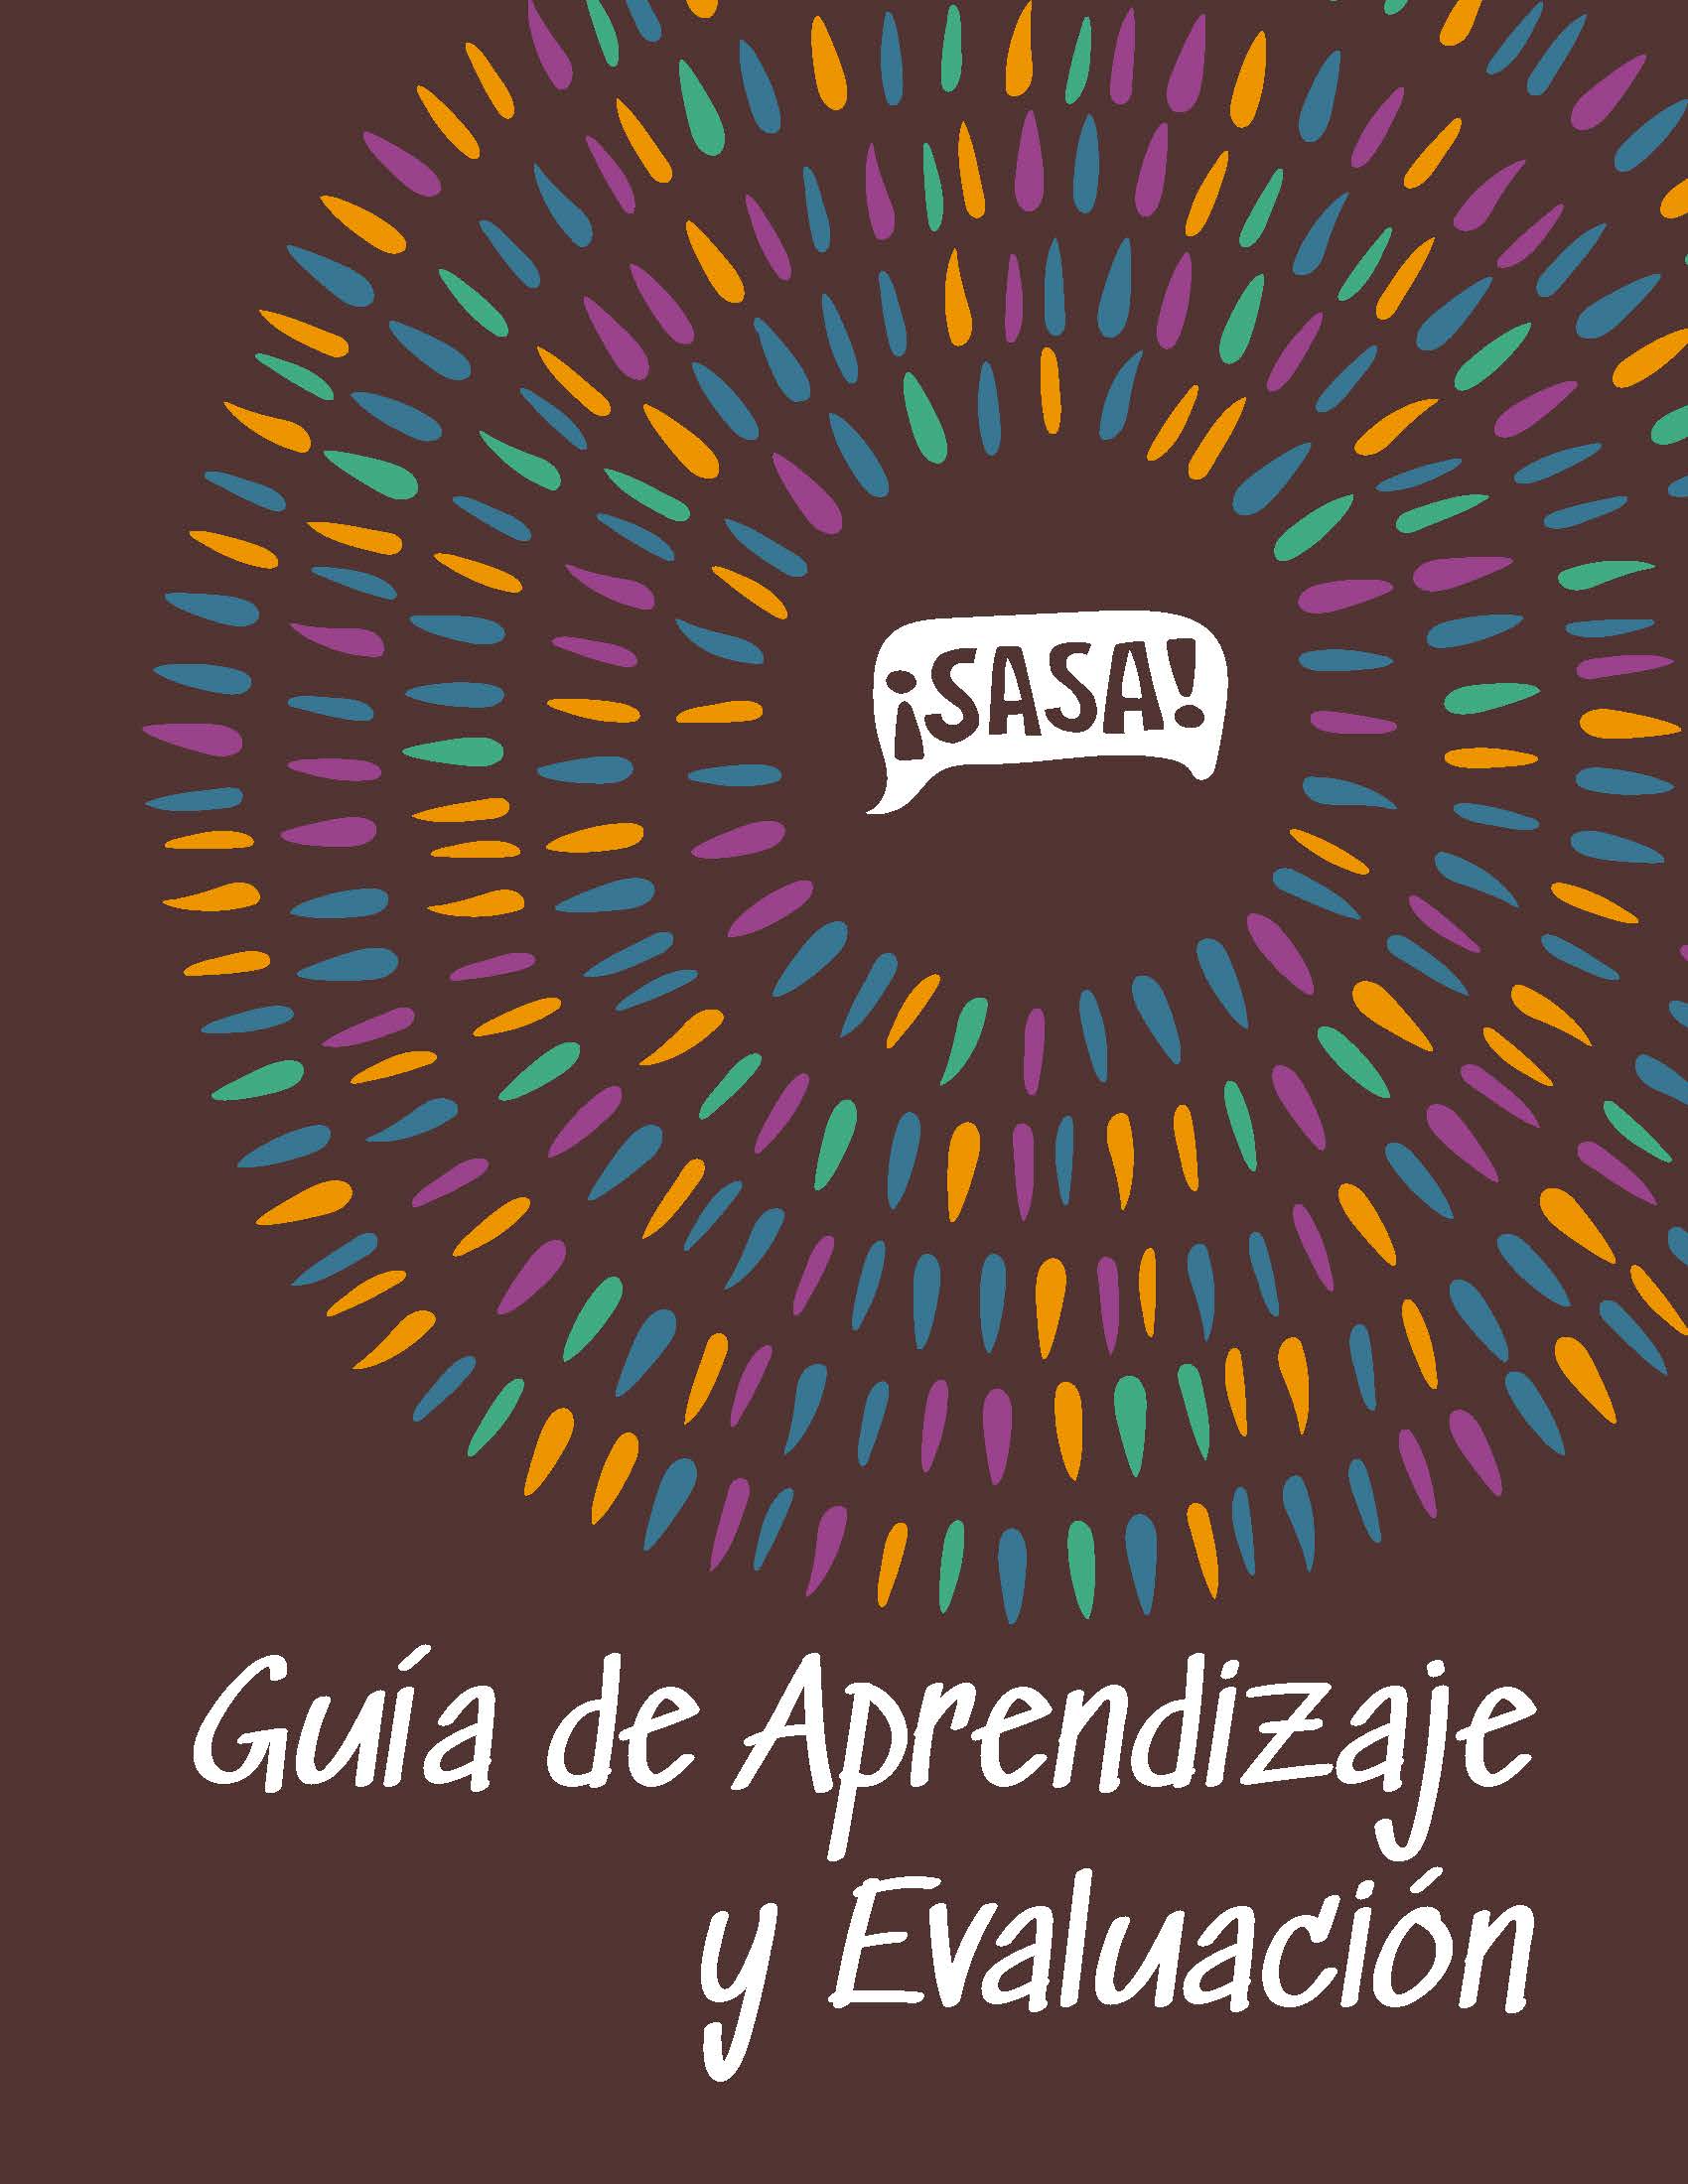 <i>SASA</i>, La Guía de A&E